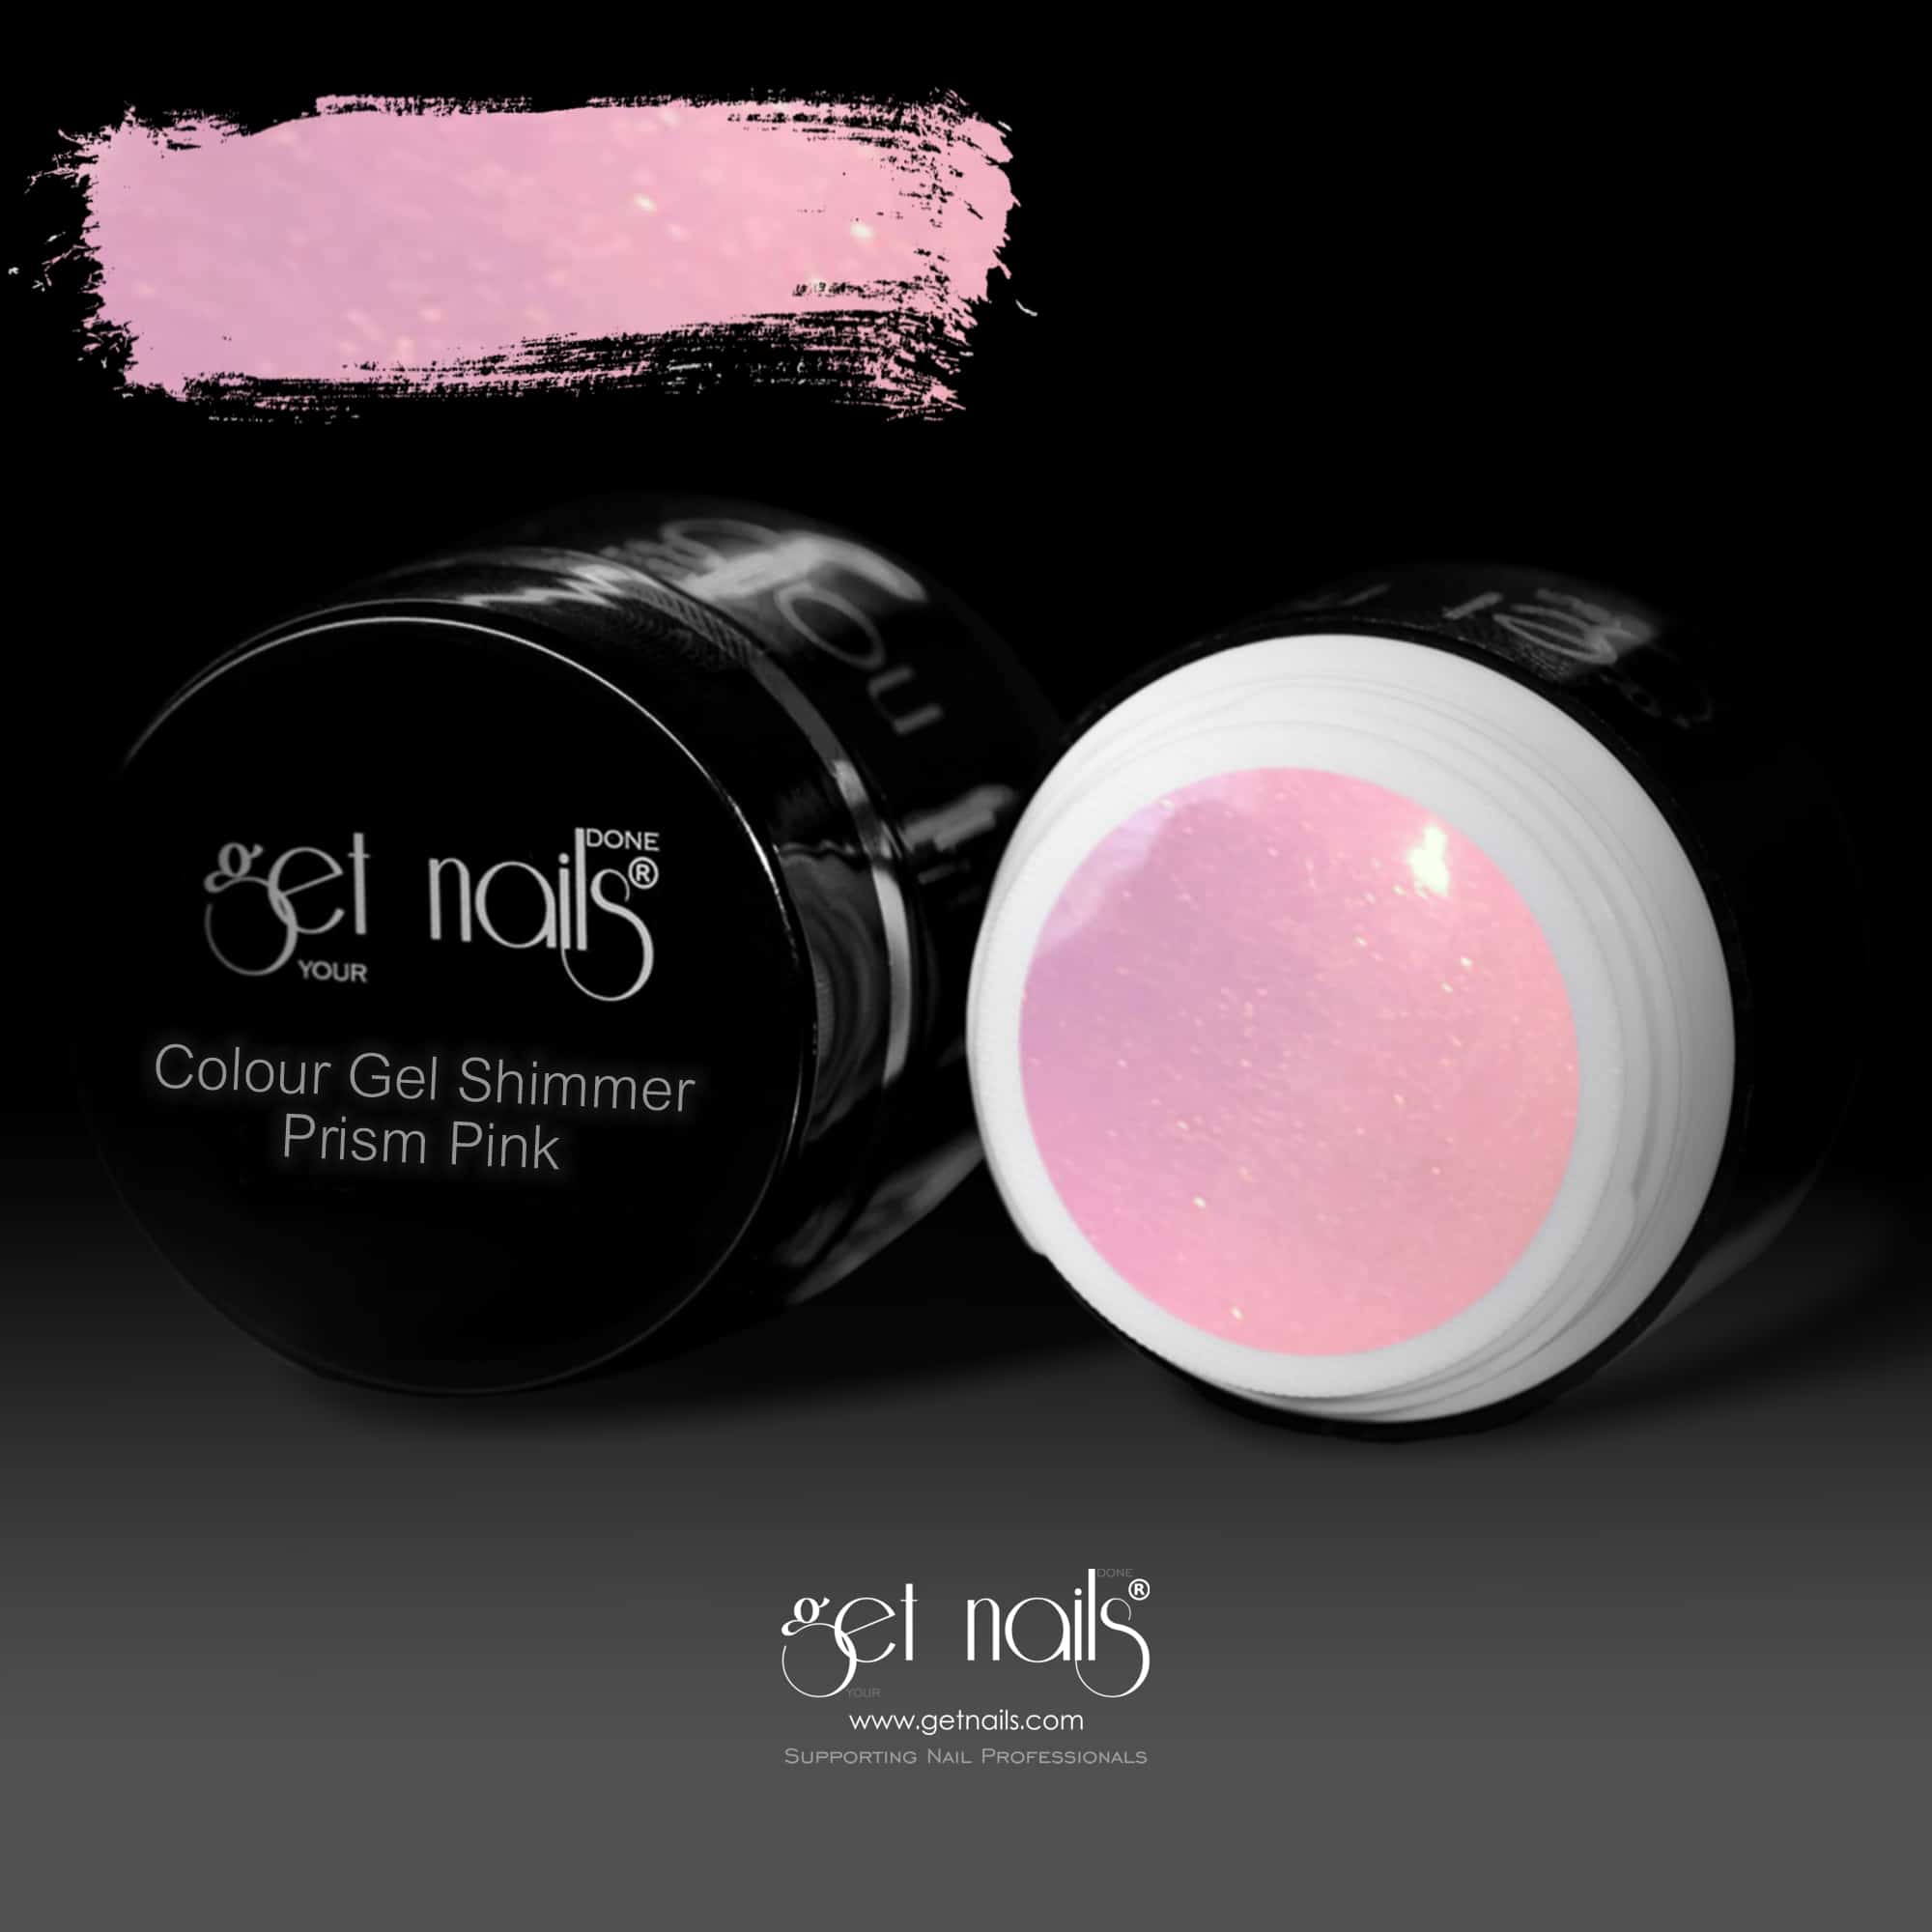 Get Nails Austria - Gel Color Shimmer Prism Pink 5g